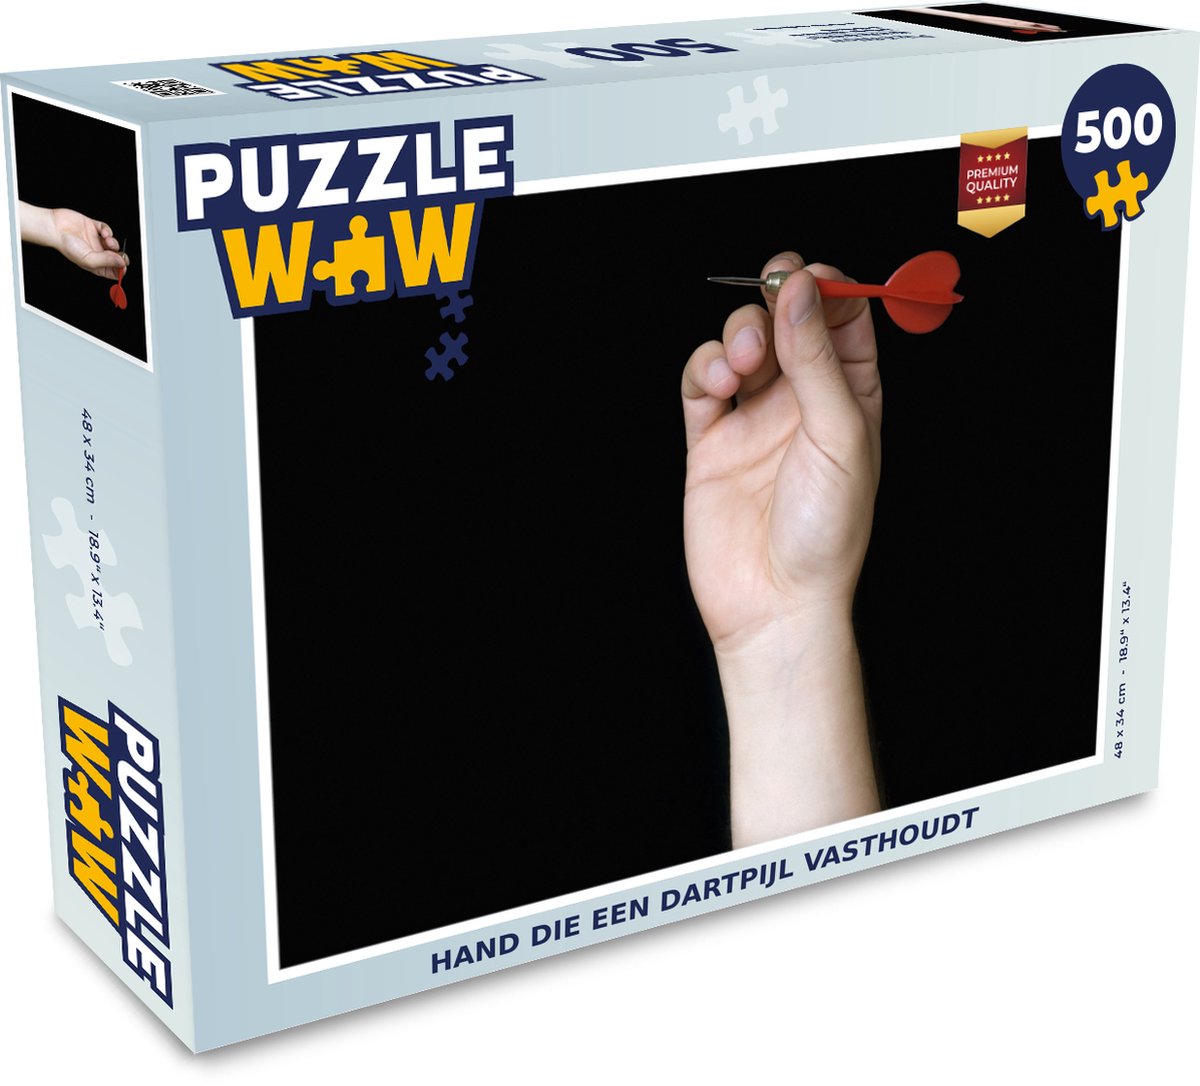 Puzzel 500 stukjes Darten - Hand die een dartpijl vasthoudt - PuzzleWow heeft +100000 puzzels